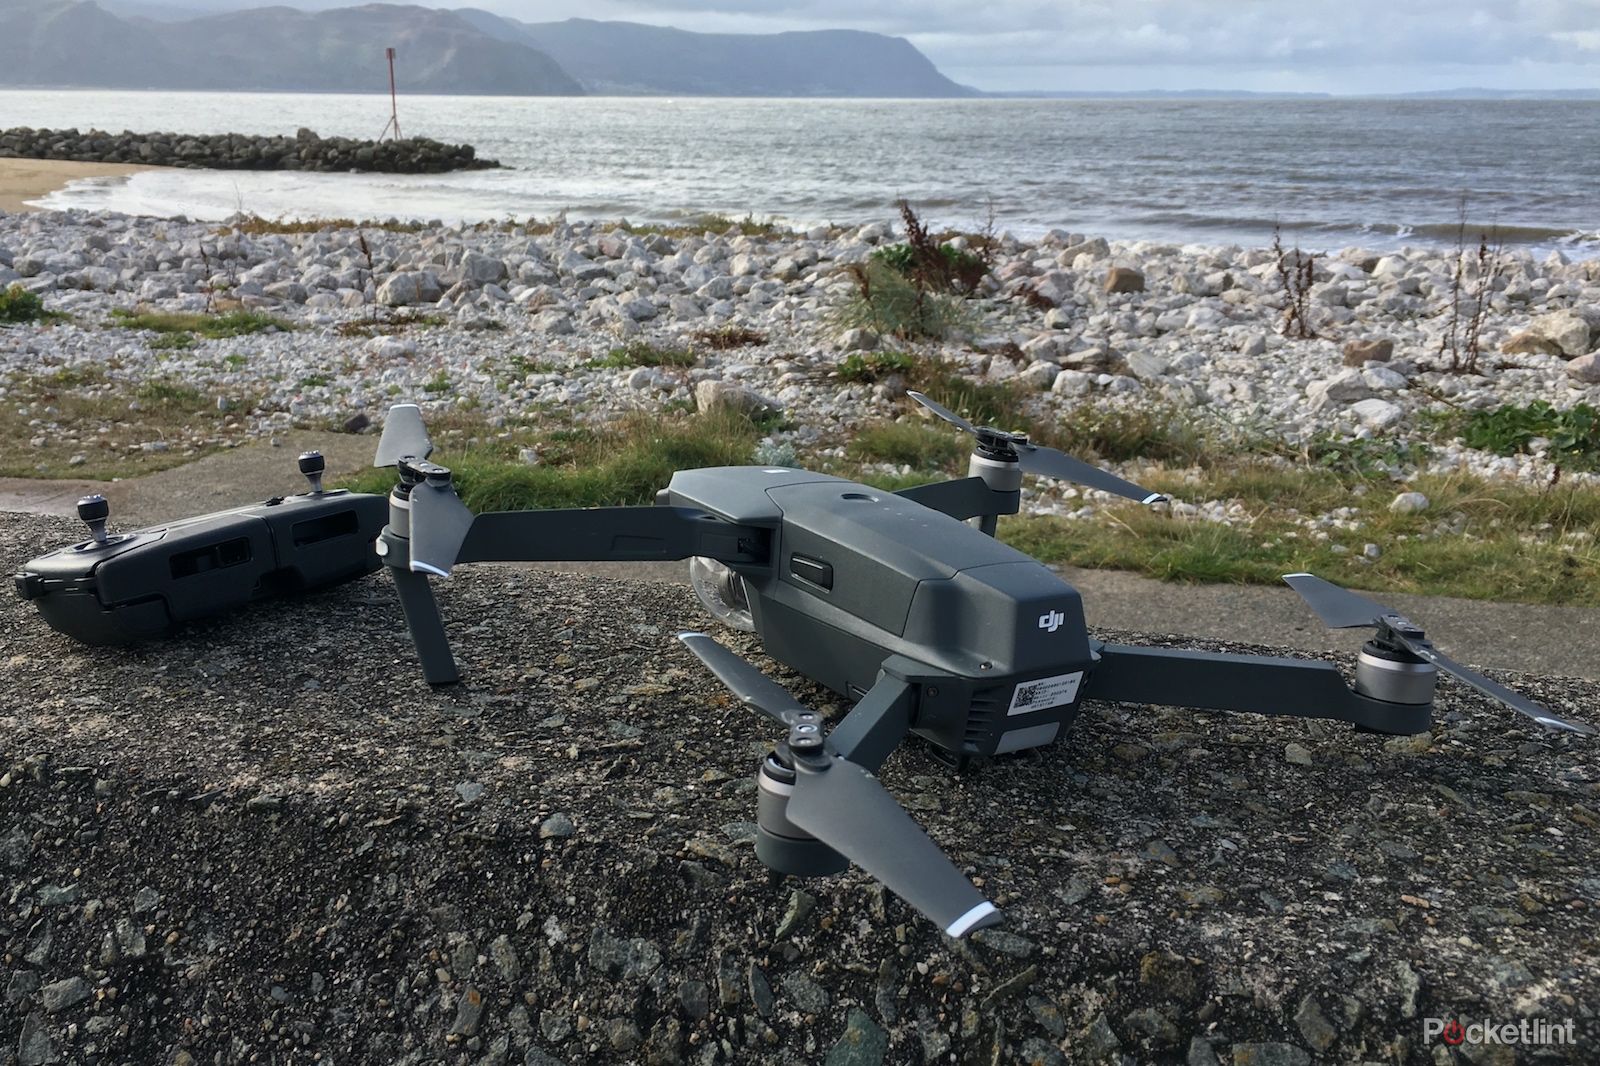 Probamos el DJI Mini 4 Pro, su nuevo dron pequeño y compacto para